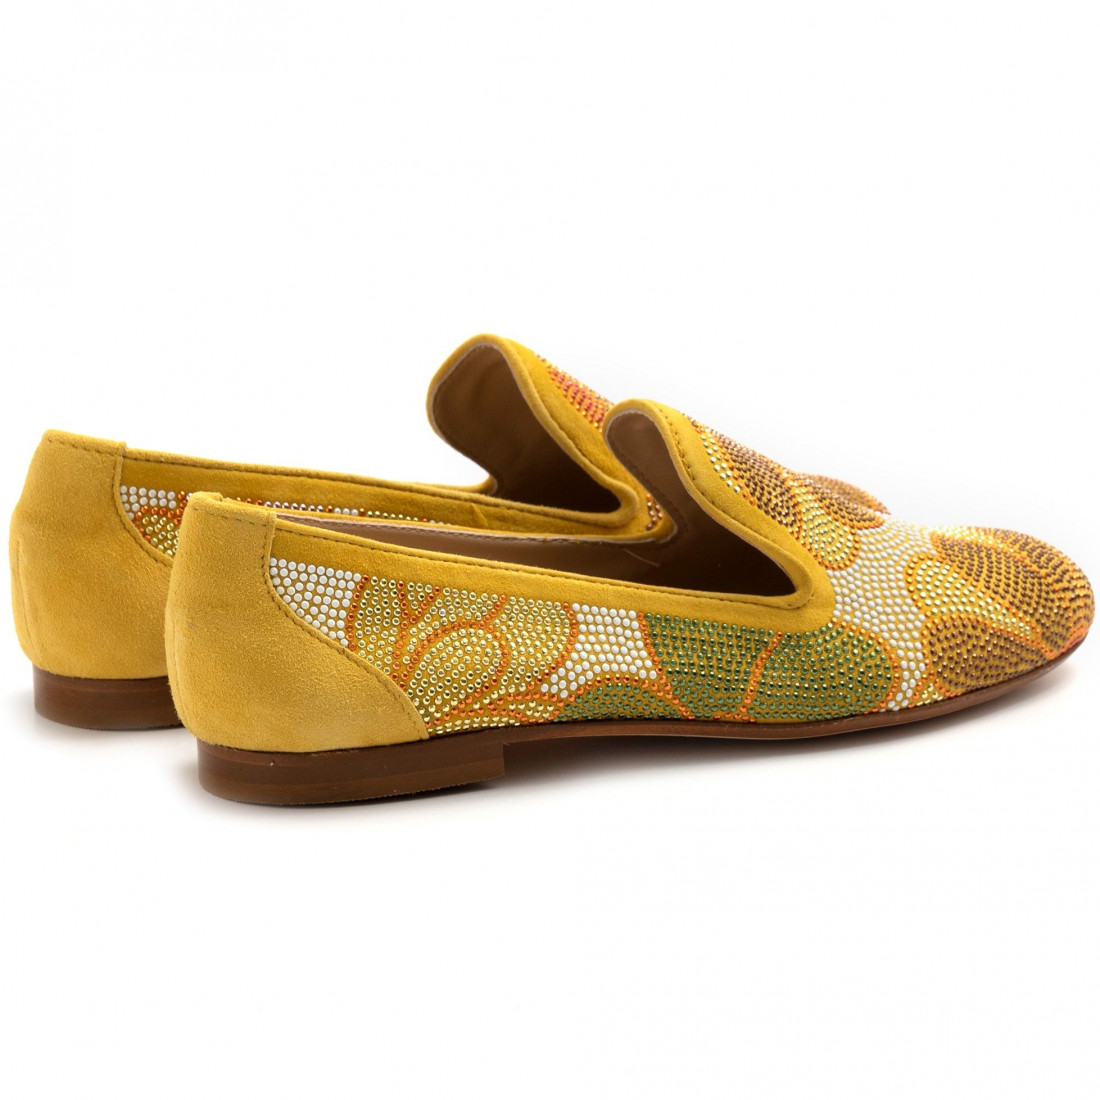 Chaussure Belle Vie modèle Via Danesi jaune avec strass colorés